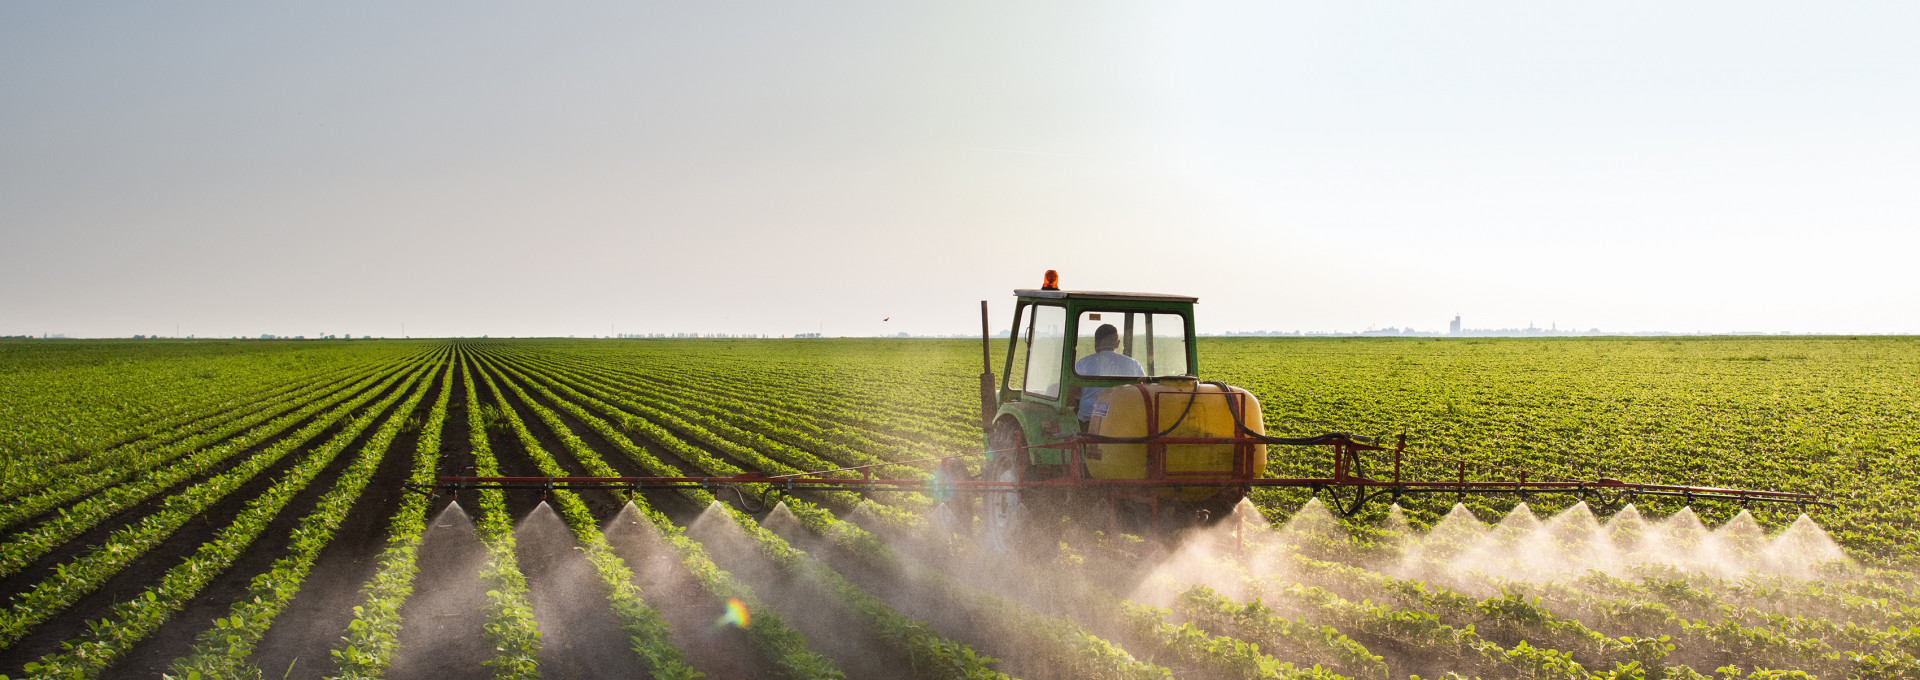 Ein Traktor sprüht Pestizide auf einem landwirtschaftlichen Feld